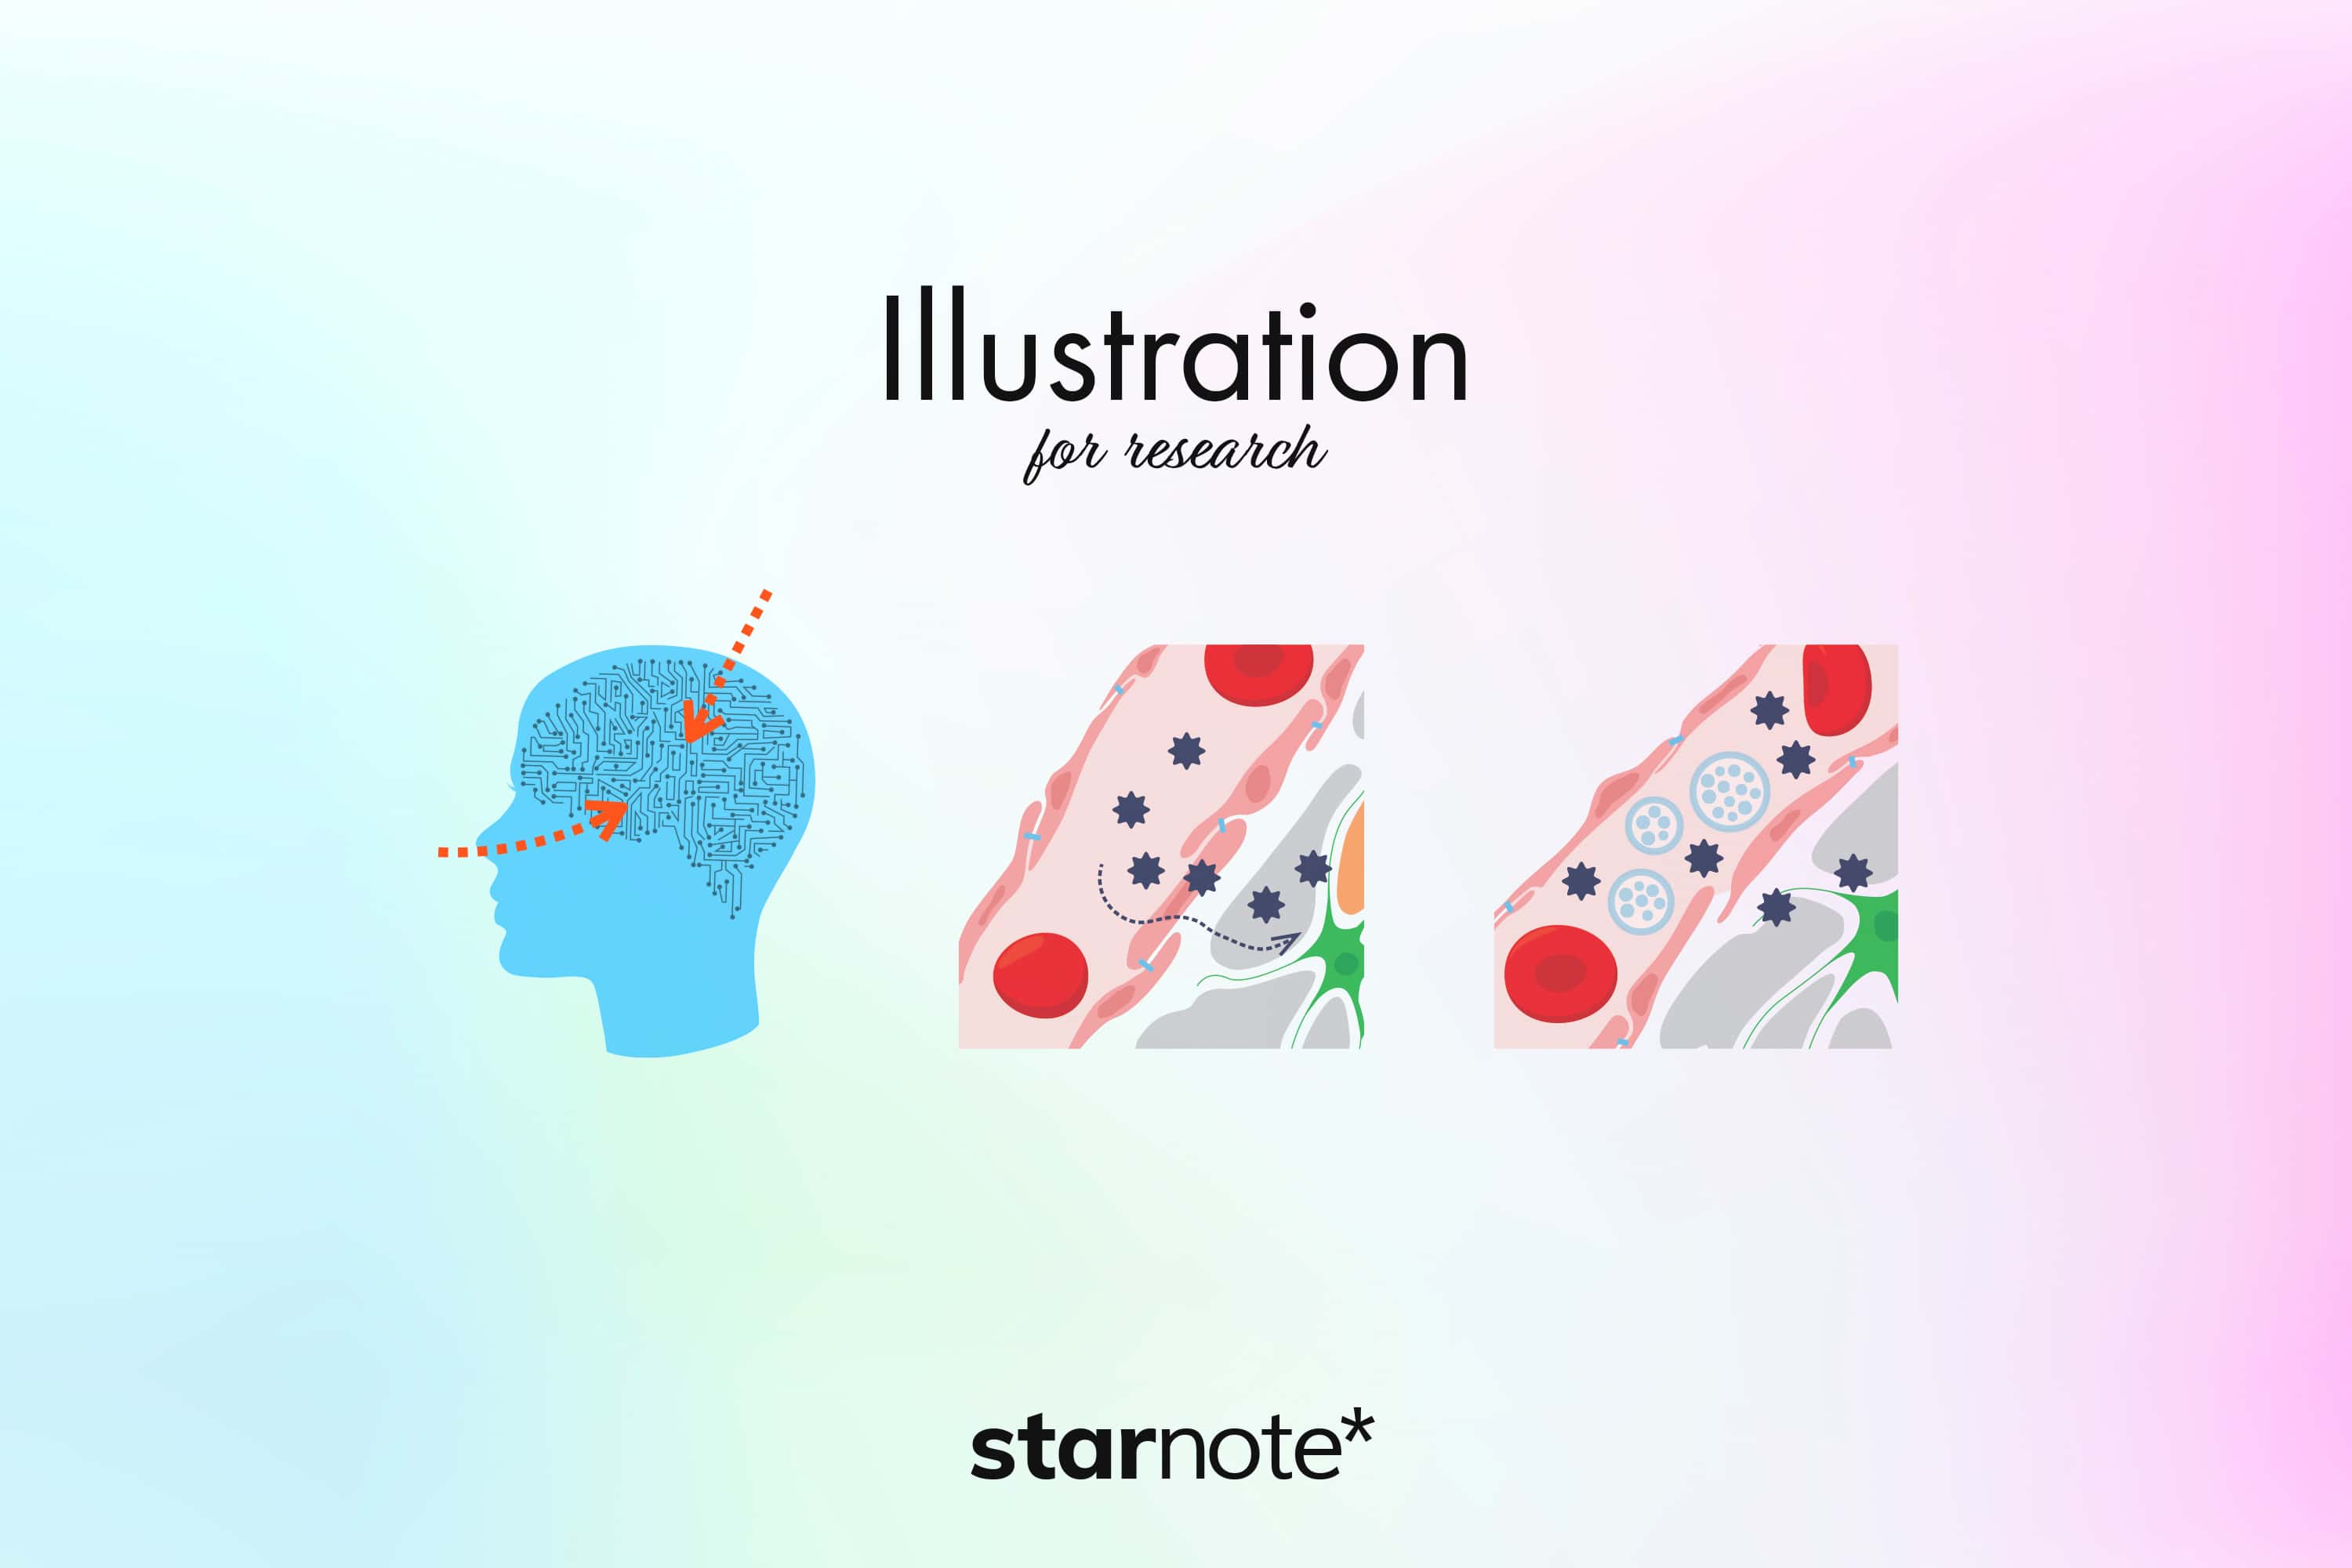 自分の研究をわかりやすく伝えるために 画力を鍛えよう Starnote